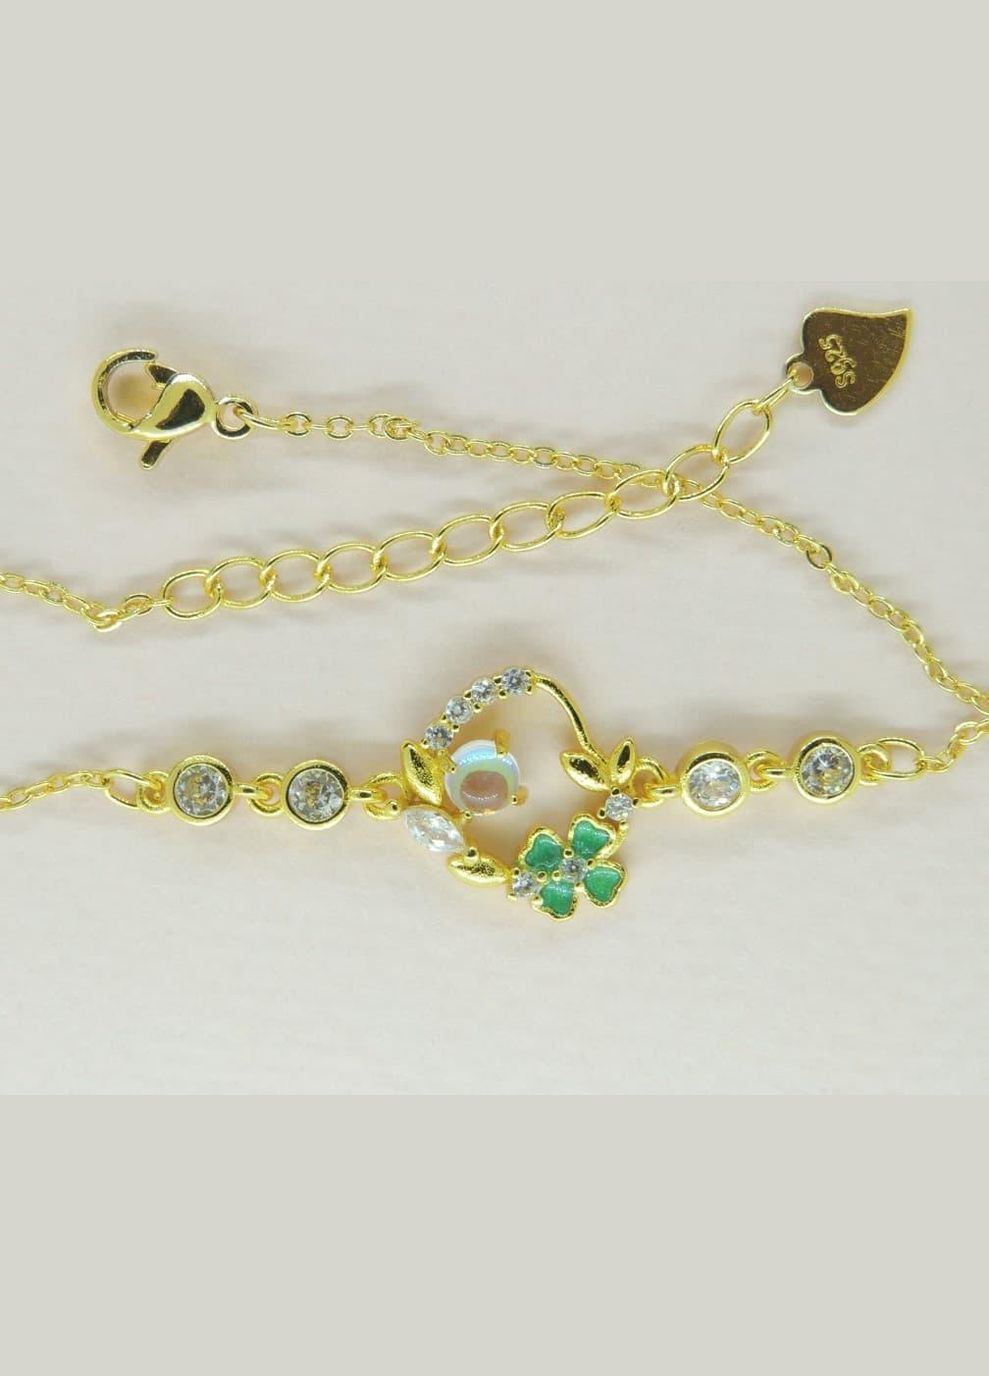 Браслет женский под золото Liresmina Jewelry браслет Талисман удачи четырехлистный клевер золотистый Fashion Jewelry (285780978)